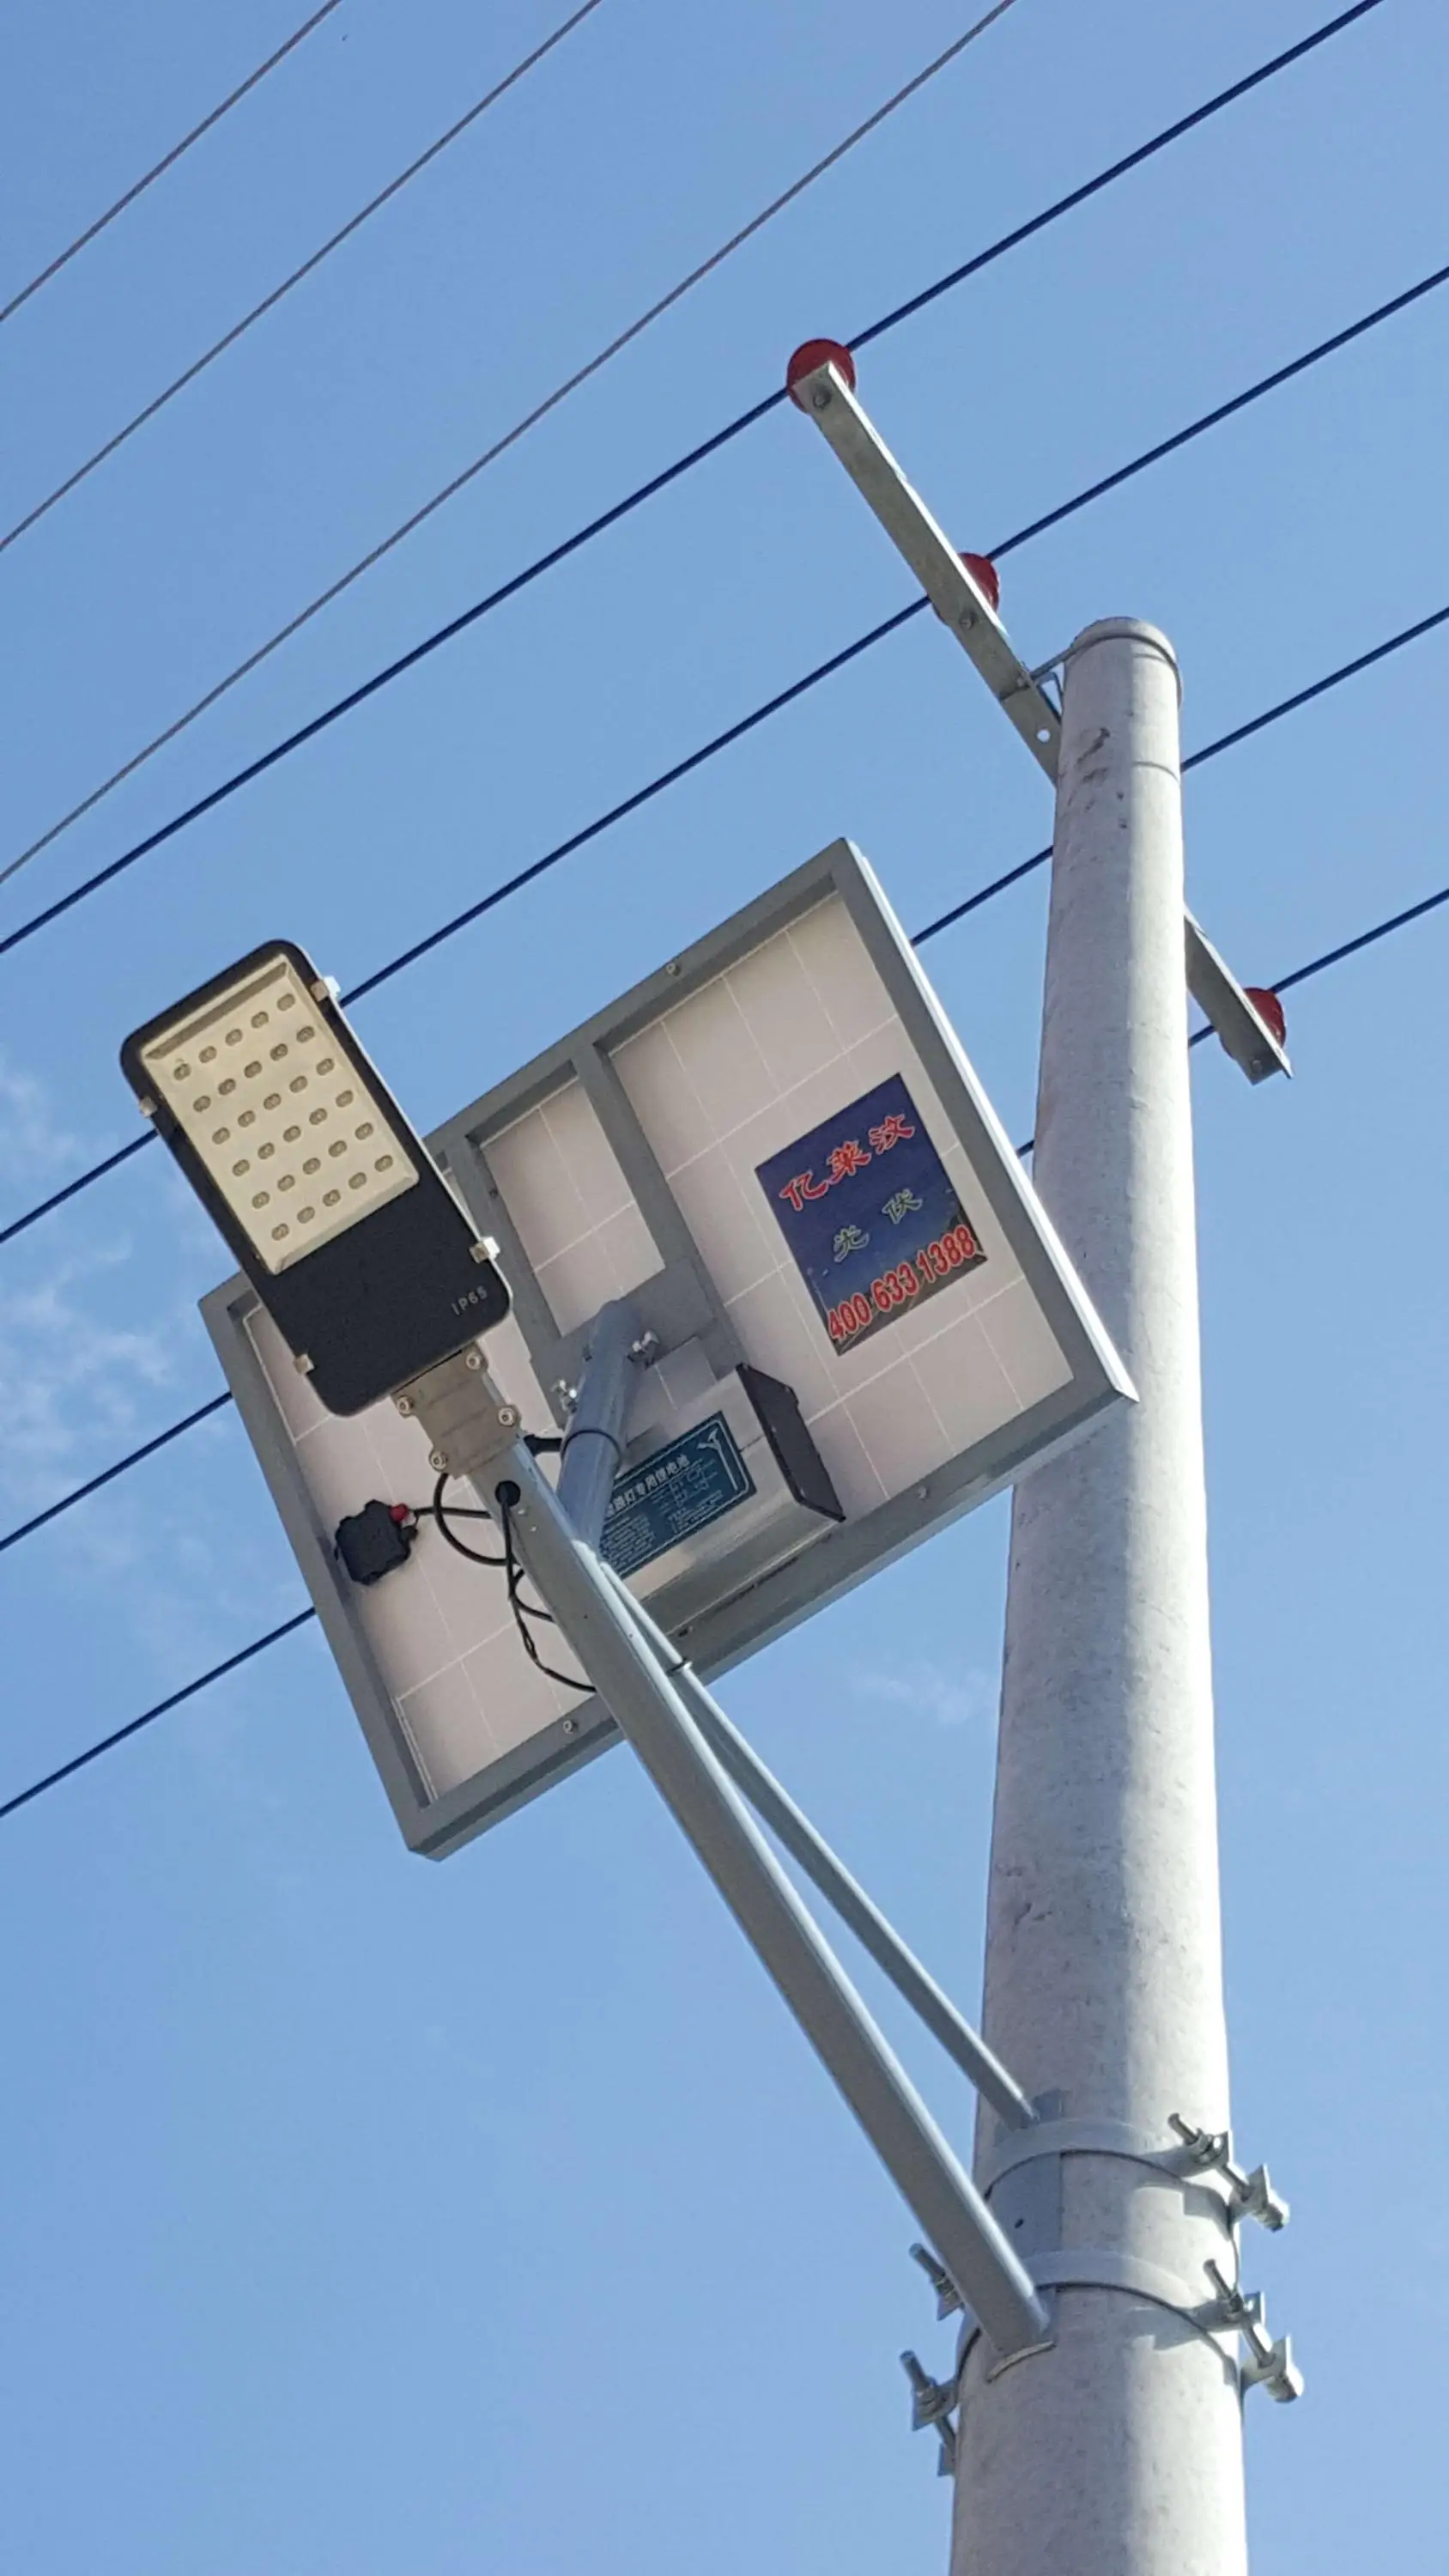 2017 hot sale Custom designed solar street light with CE&Rohs certificate